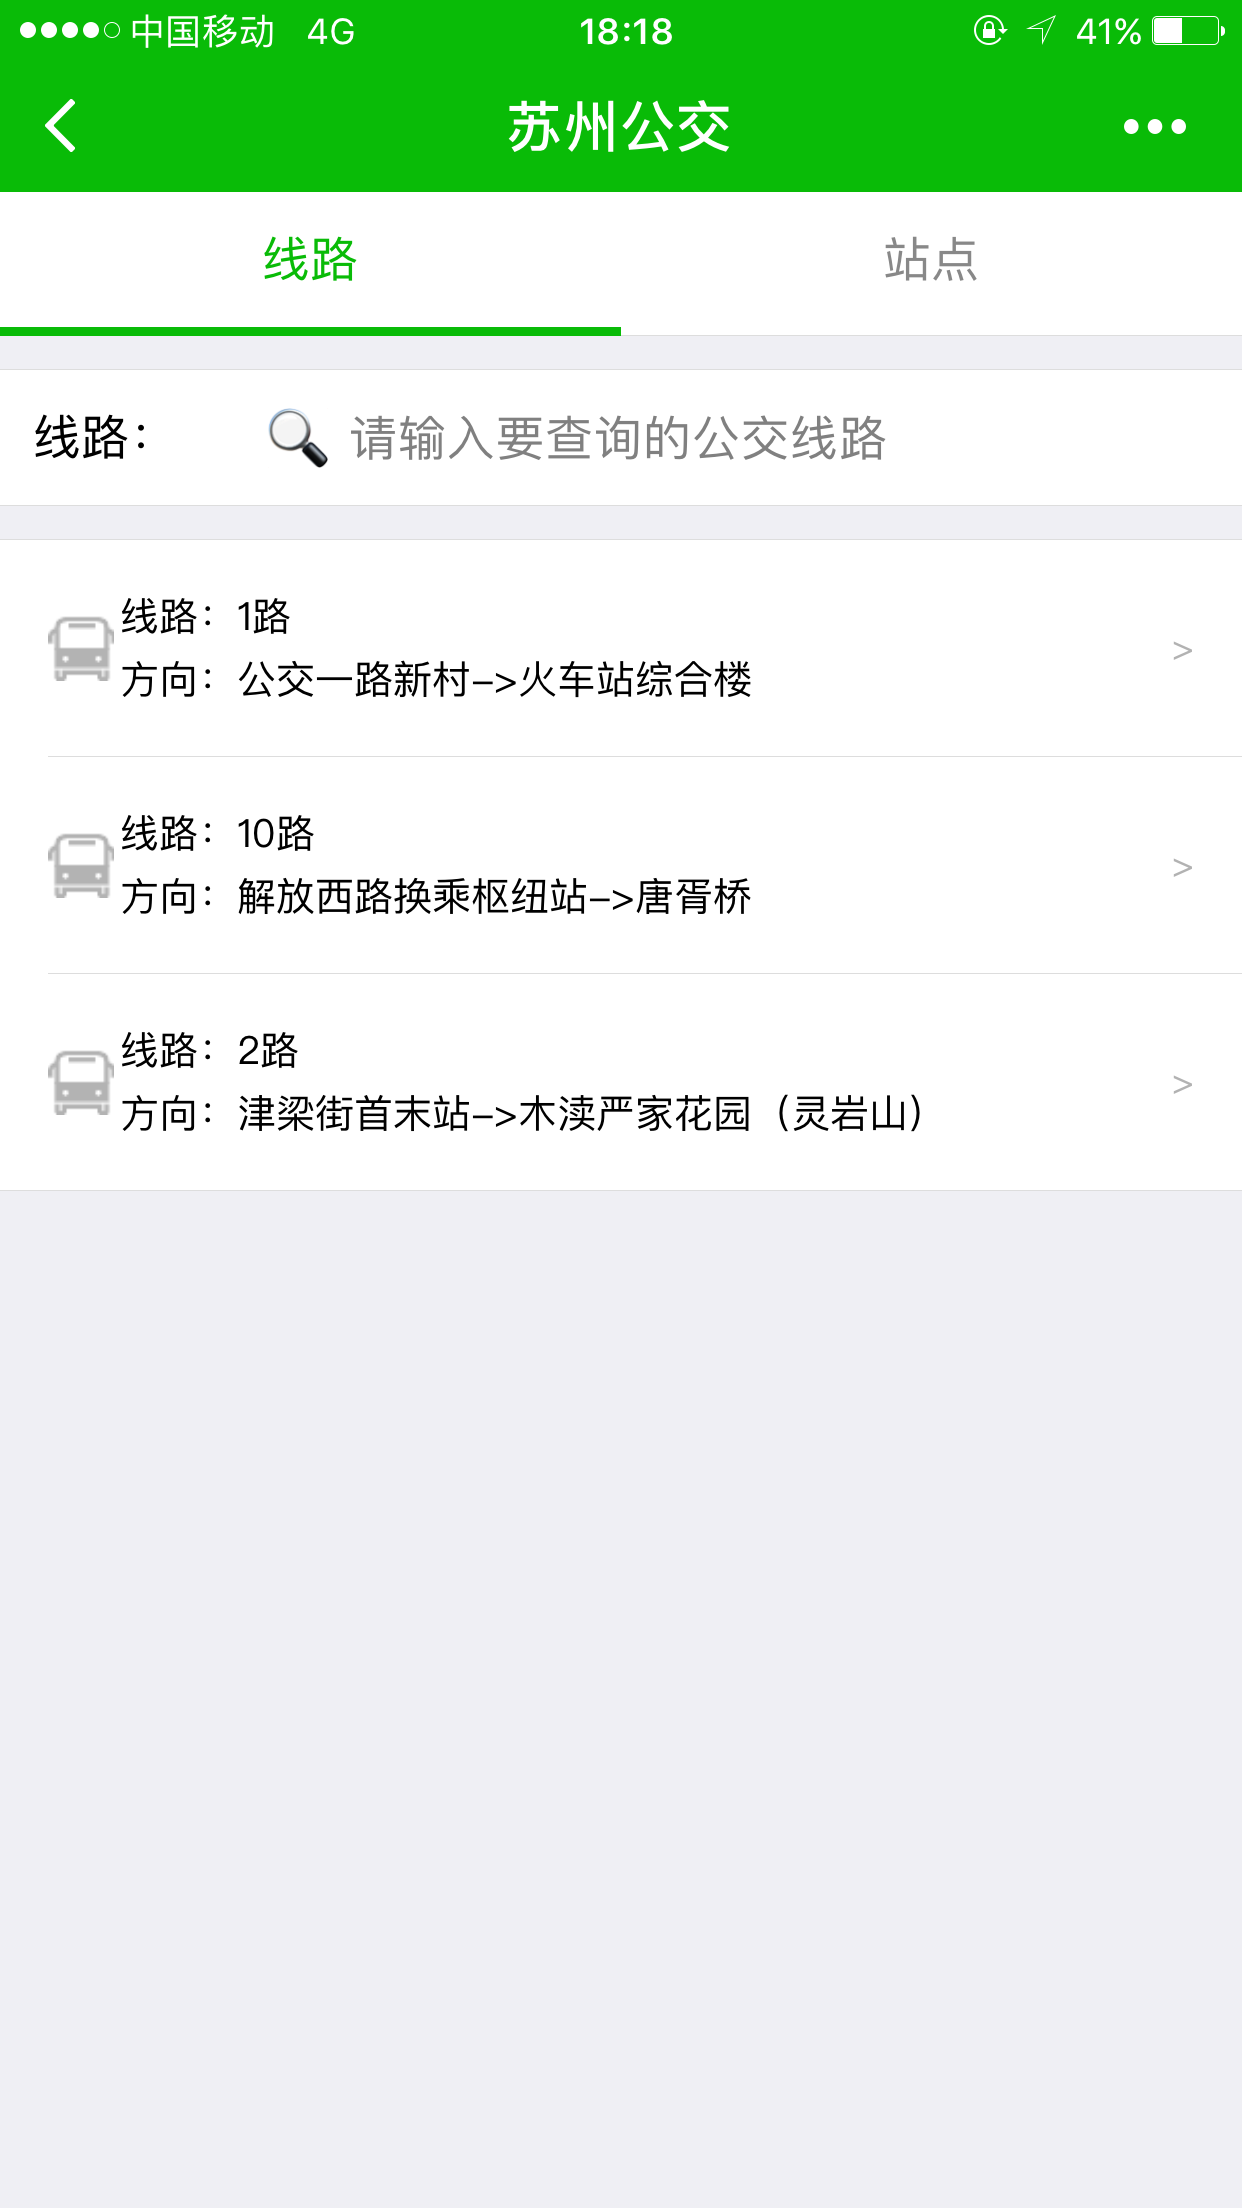 苏州公交app_苏州公交app小程序_苏州公交app微信小程序